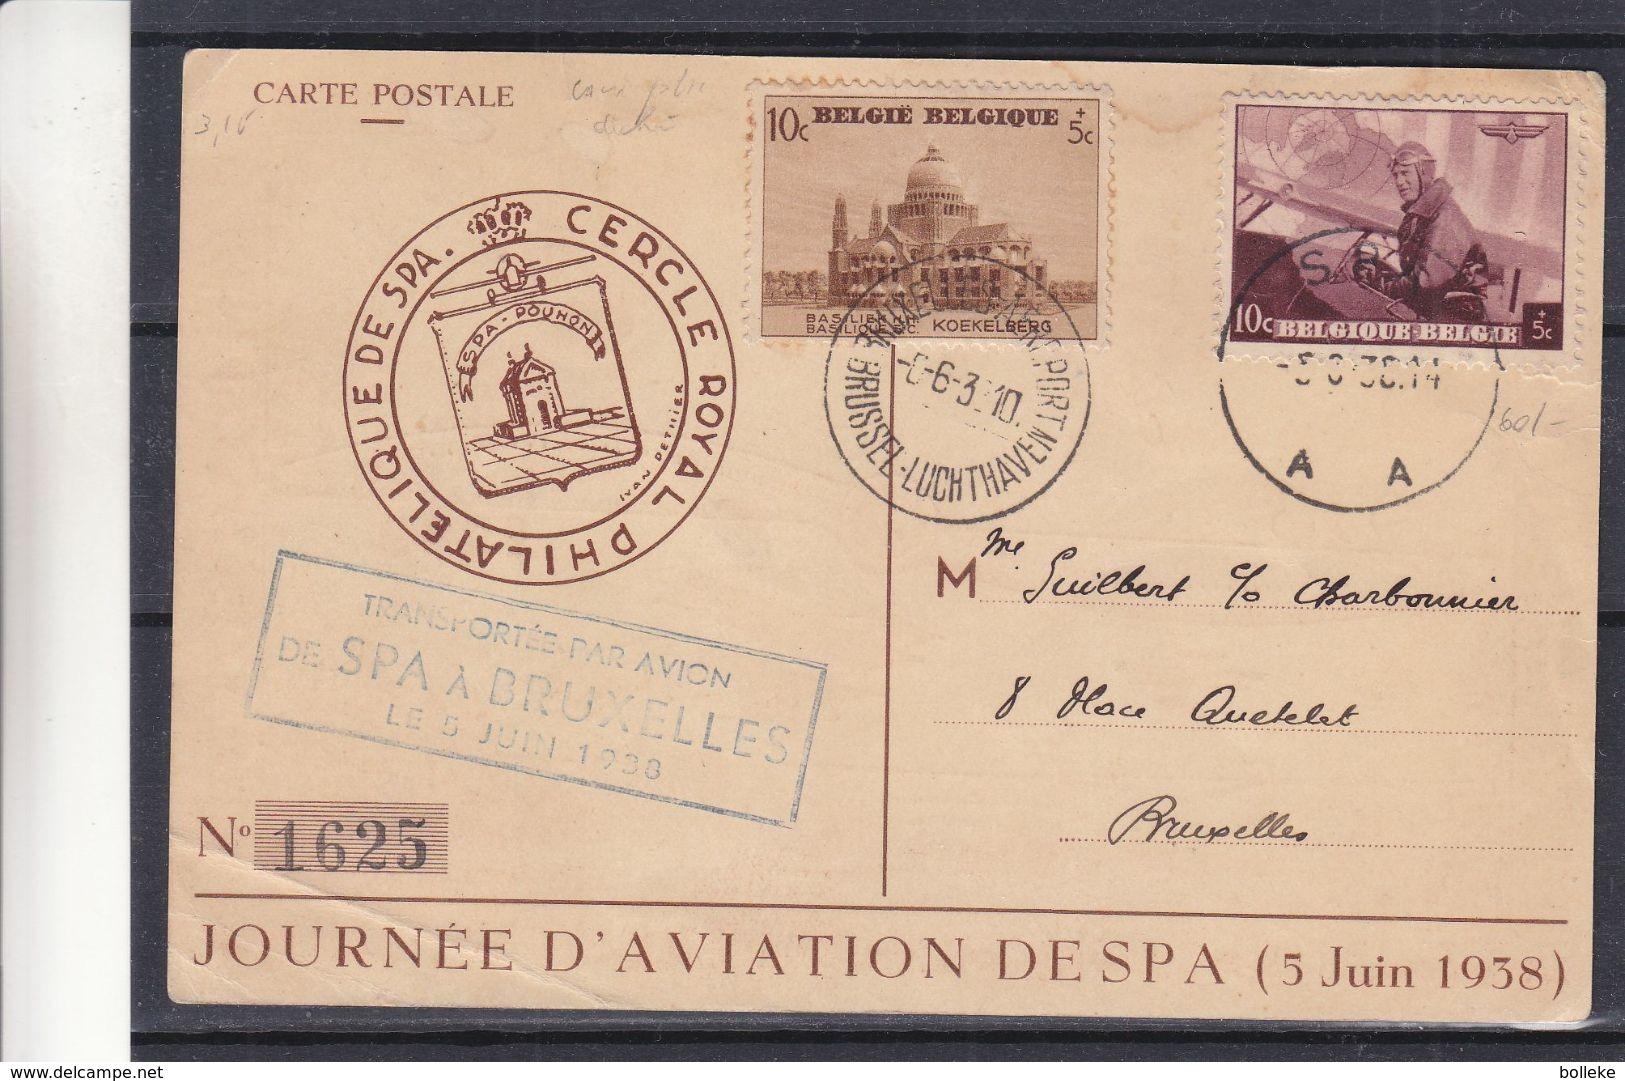 Belgique - Carte Postale De 1938 - Oblit Bruxelles Aéroport Et Spa - Vol Spécial De Spa à Bruxelles - - Covers & Documents